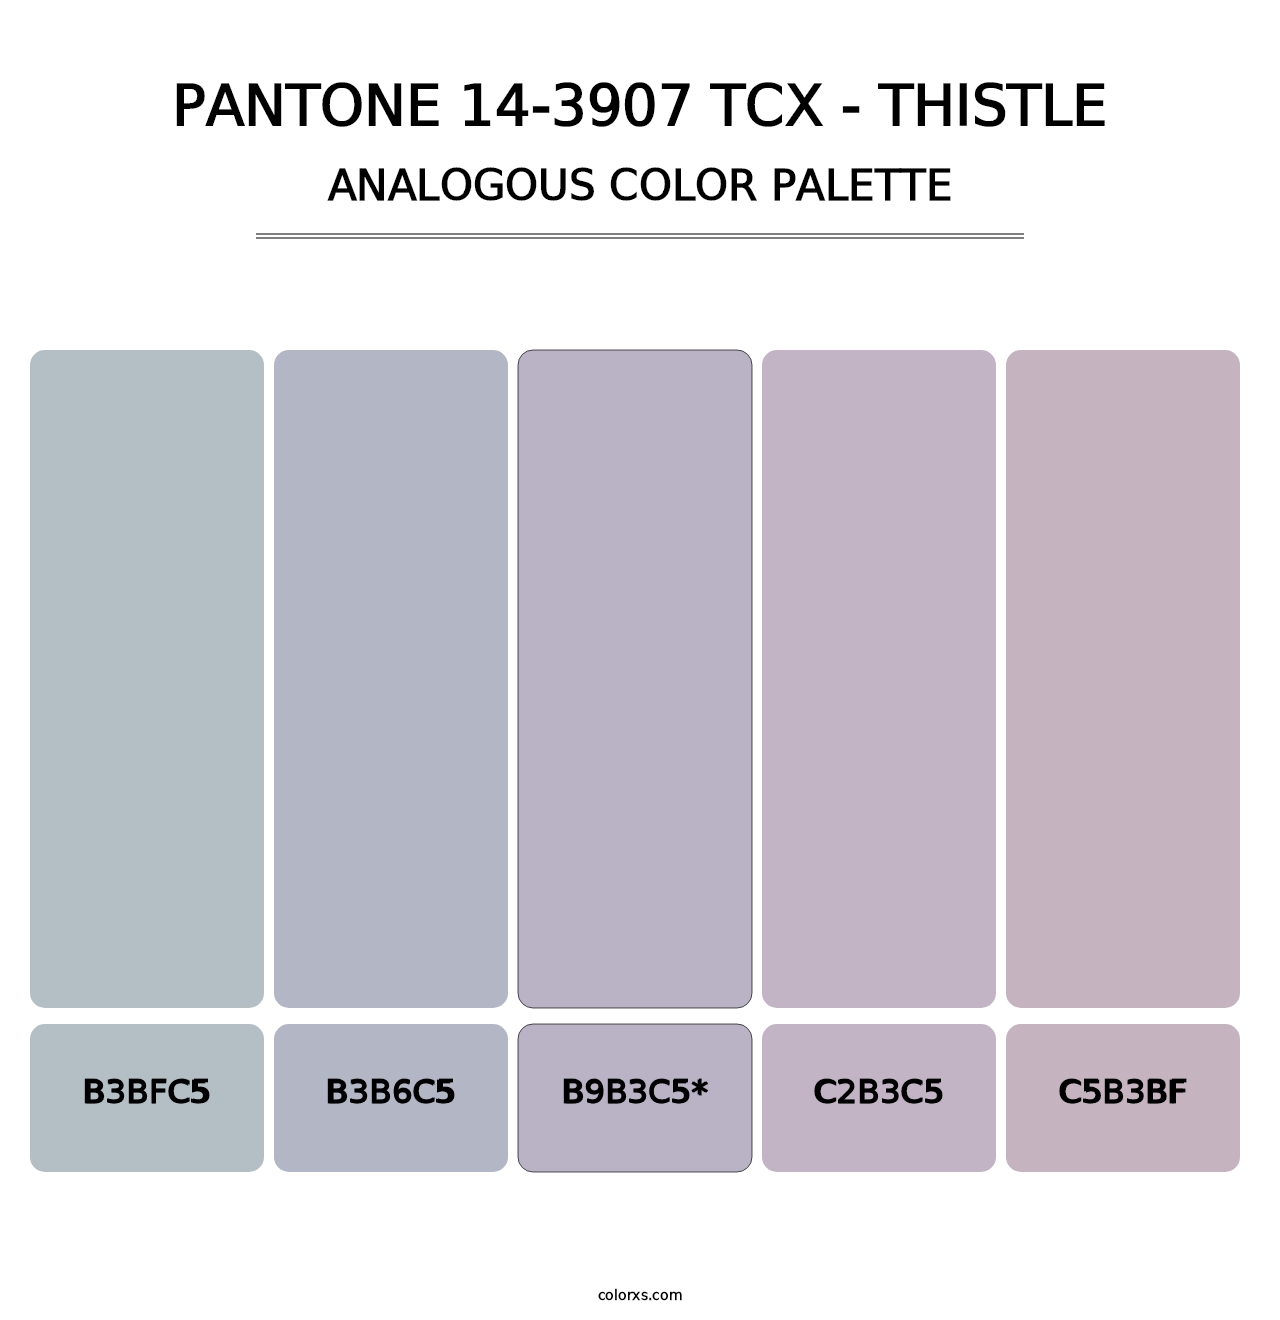 PANTONE 14-3907 TCX - Thistle - Analogous Color Palette